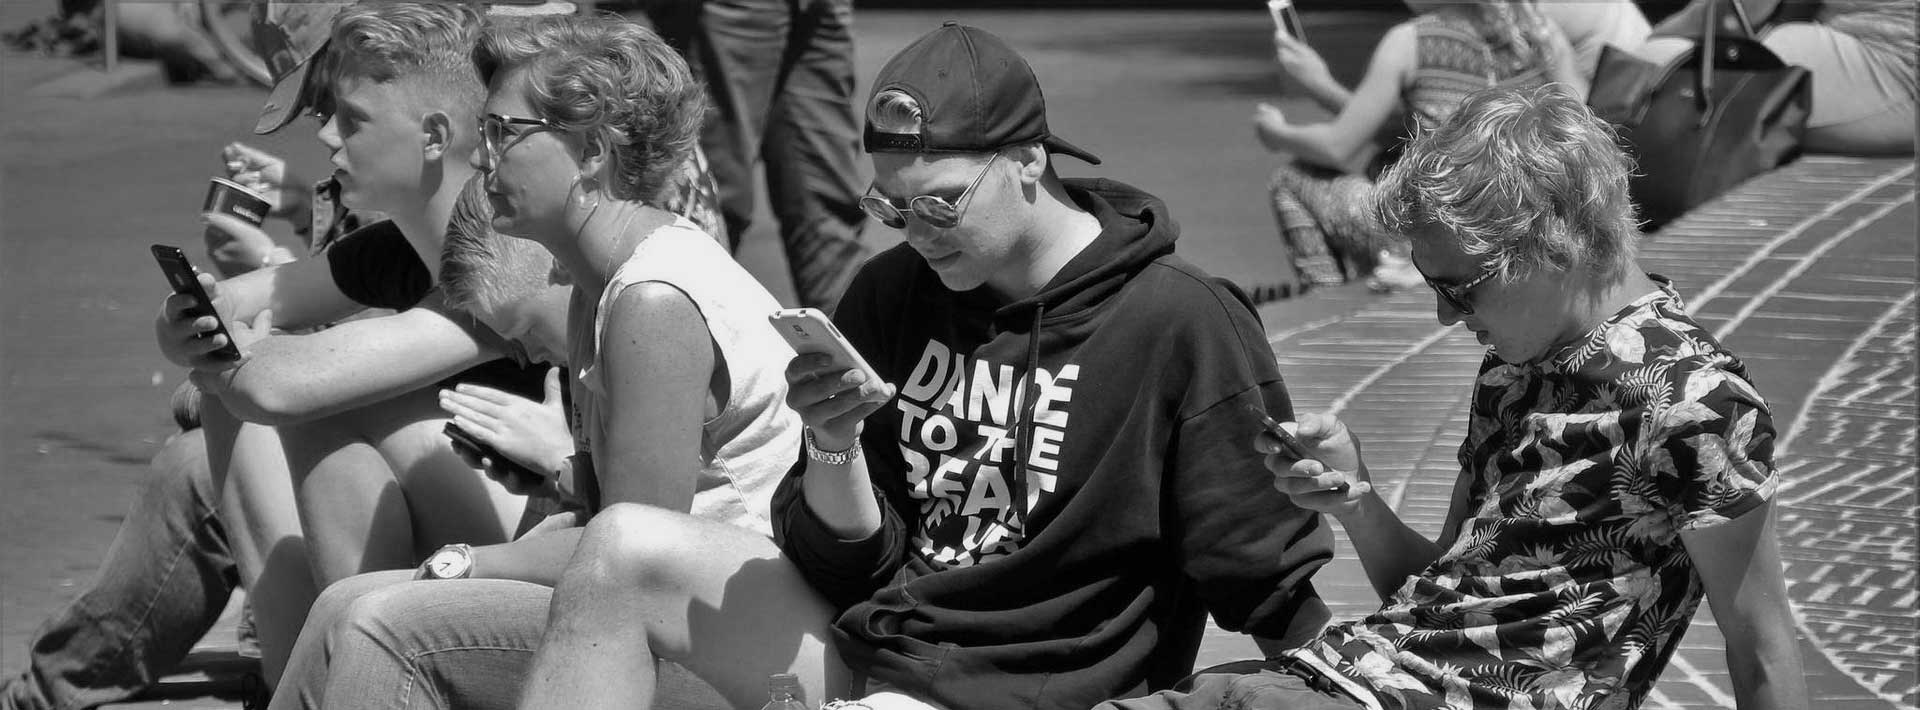 Obraz przedstawia młodzież siedzącą na chodniku. Każdy z młodzieńców wpatrzony jest w telefon komórkowy